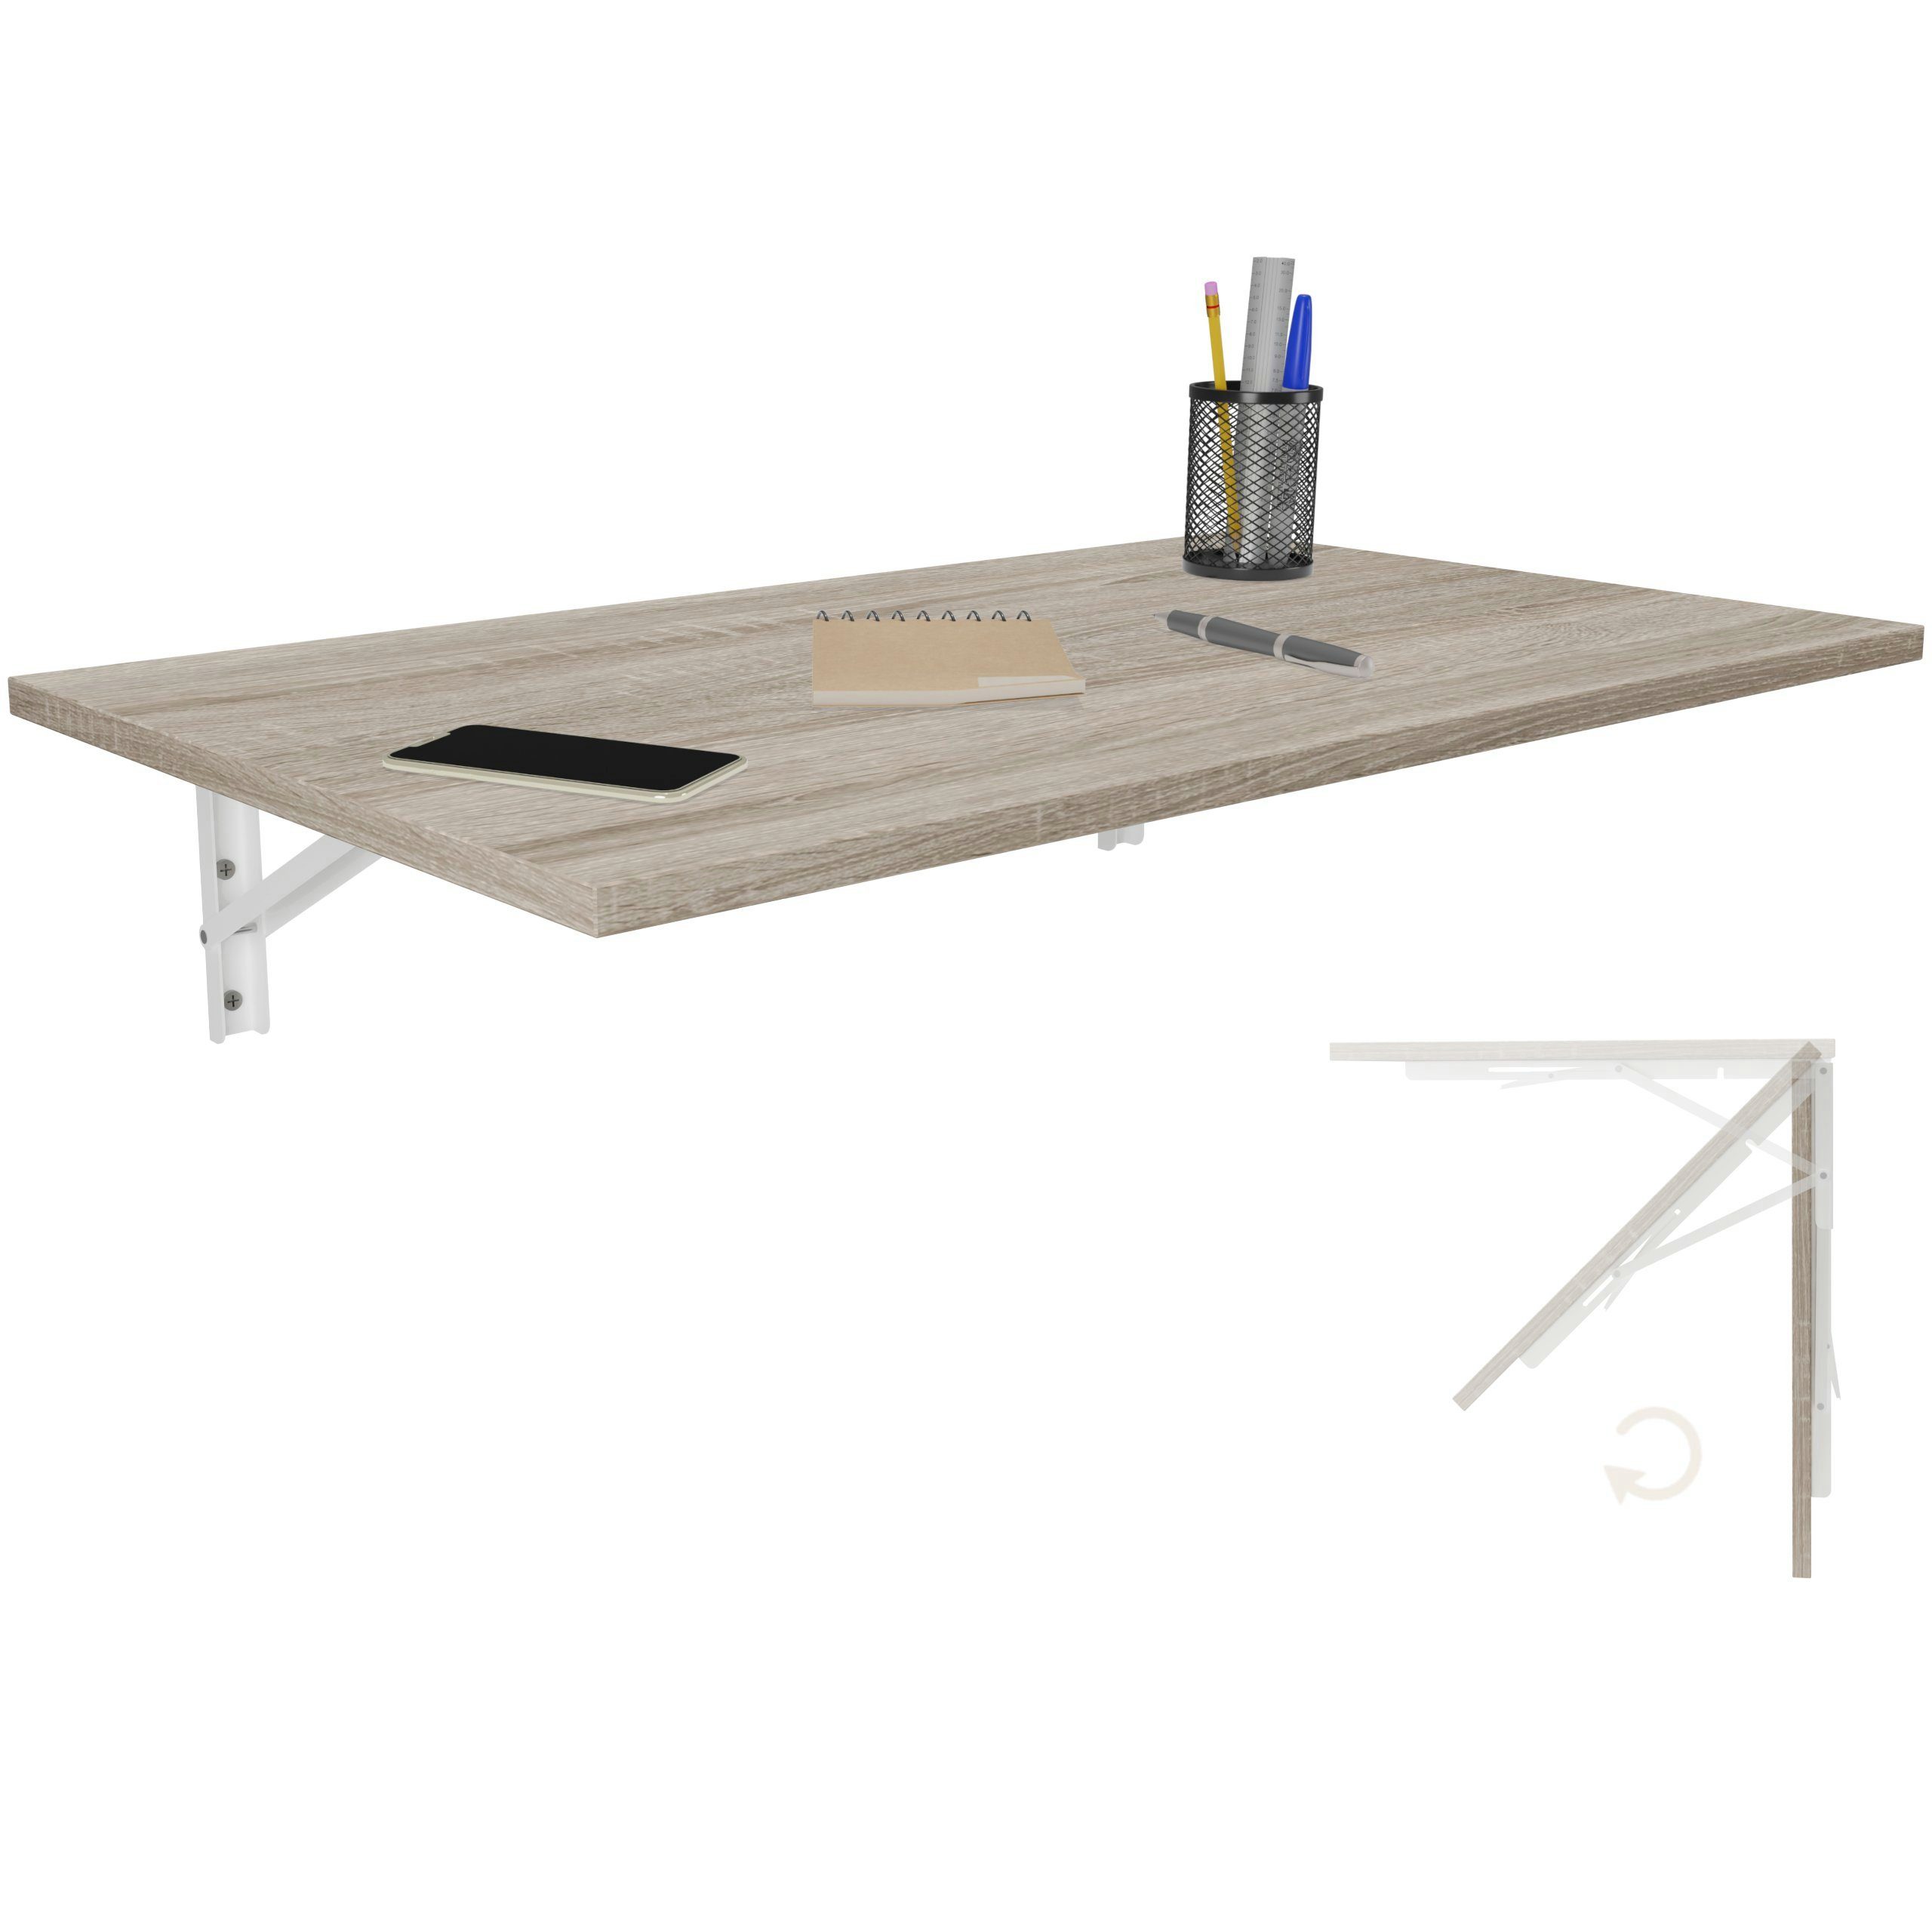 Sonoma Eiche Klapptisch Produktgestaltung Wandklapptisch Tisch, Küchentisch 80x50 Wand Esstisch Schreibtisch KDR